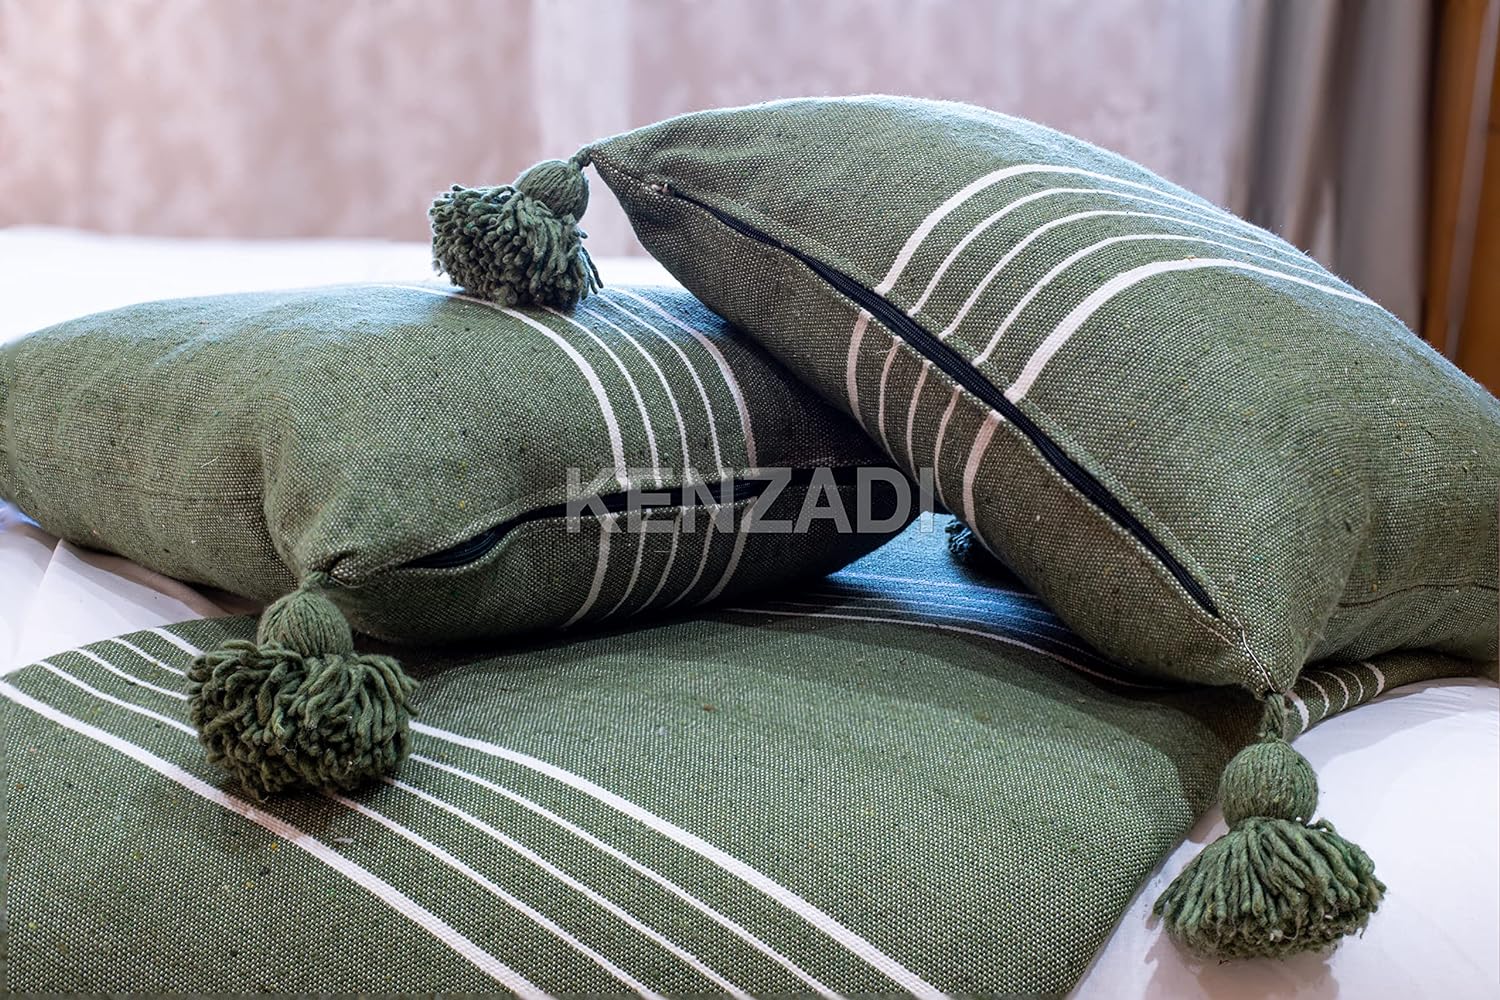 KENZADI Moroccan Handmade Pompom Blanket, Throw Blanket, Pom Pom Blanket, Boho Blanket, Bed Cover, Warm Blanket, Cozy Blanket (Green with pom Green, King (U.S. Standard)) - Handmade by My Poufs